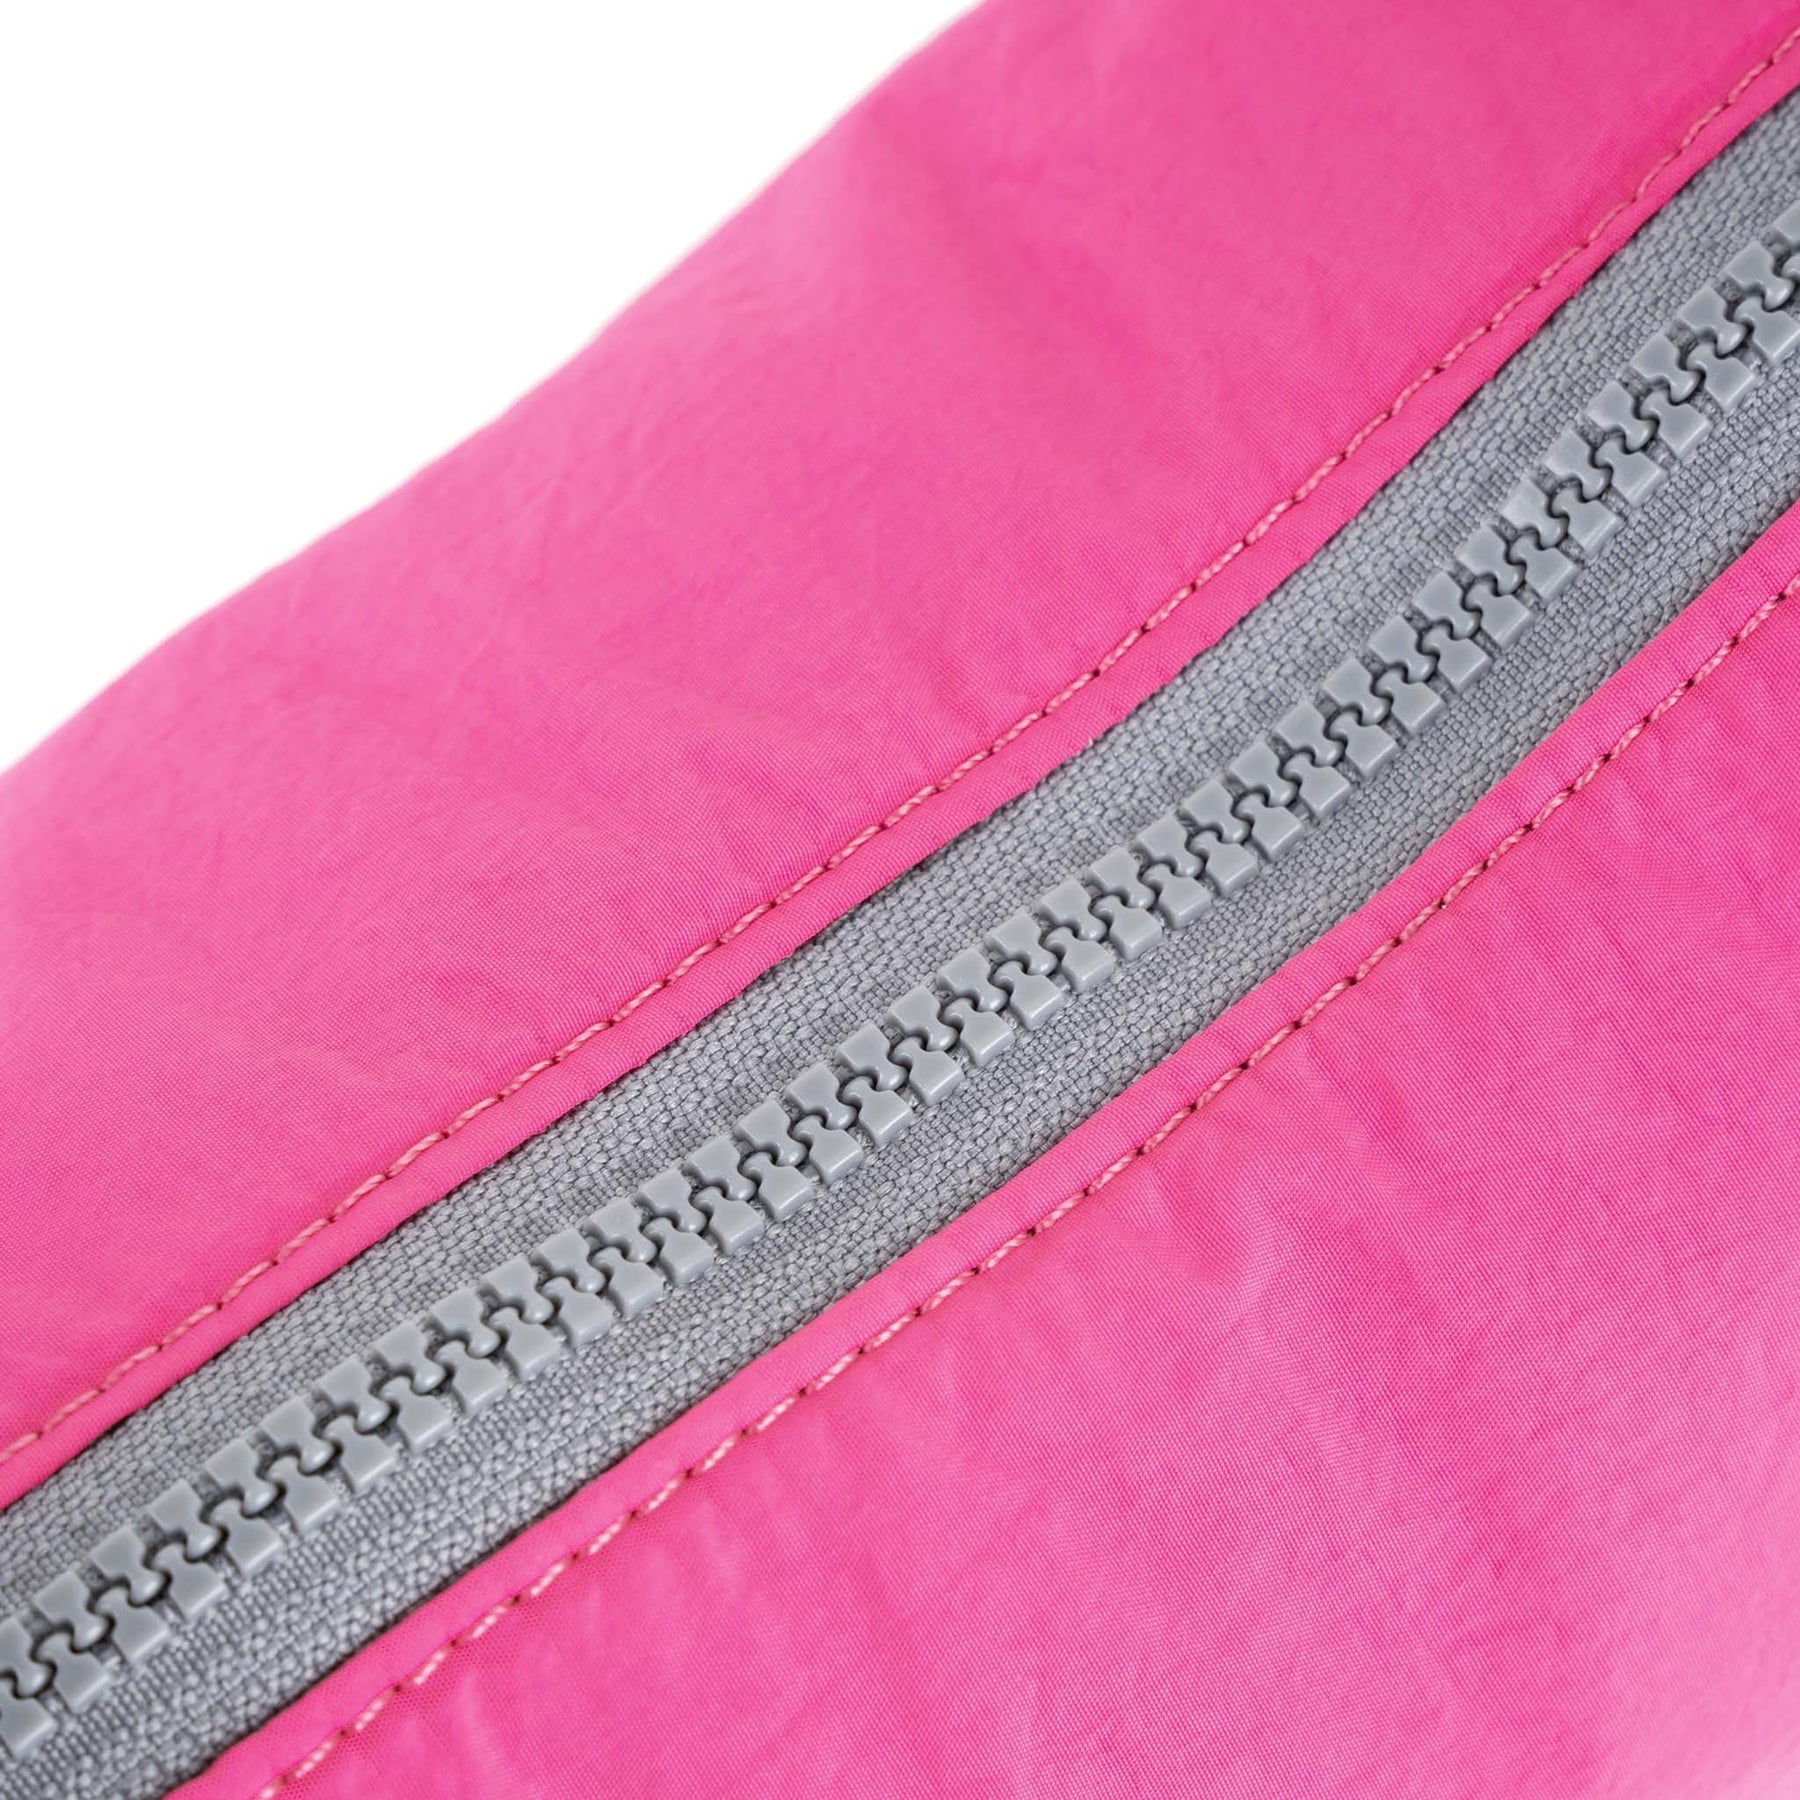 Hot Pink Farringdon Bag